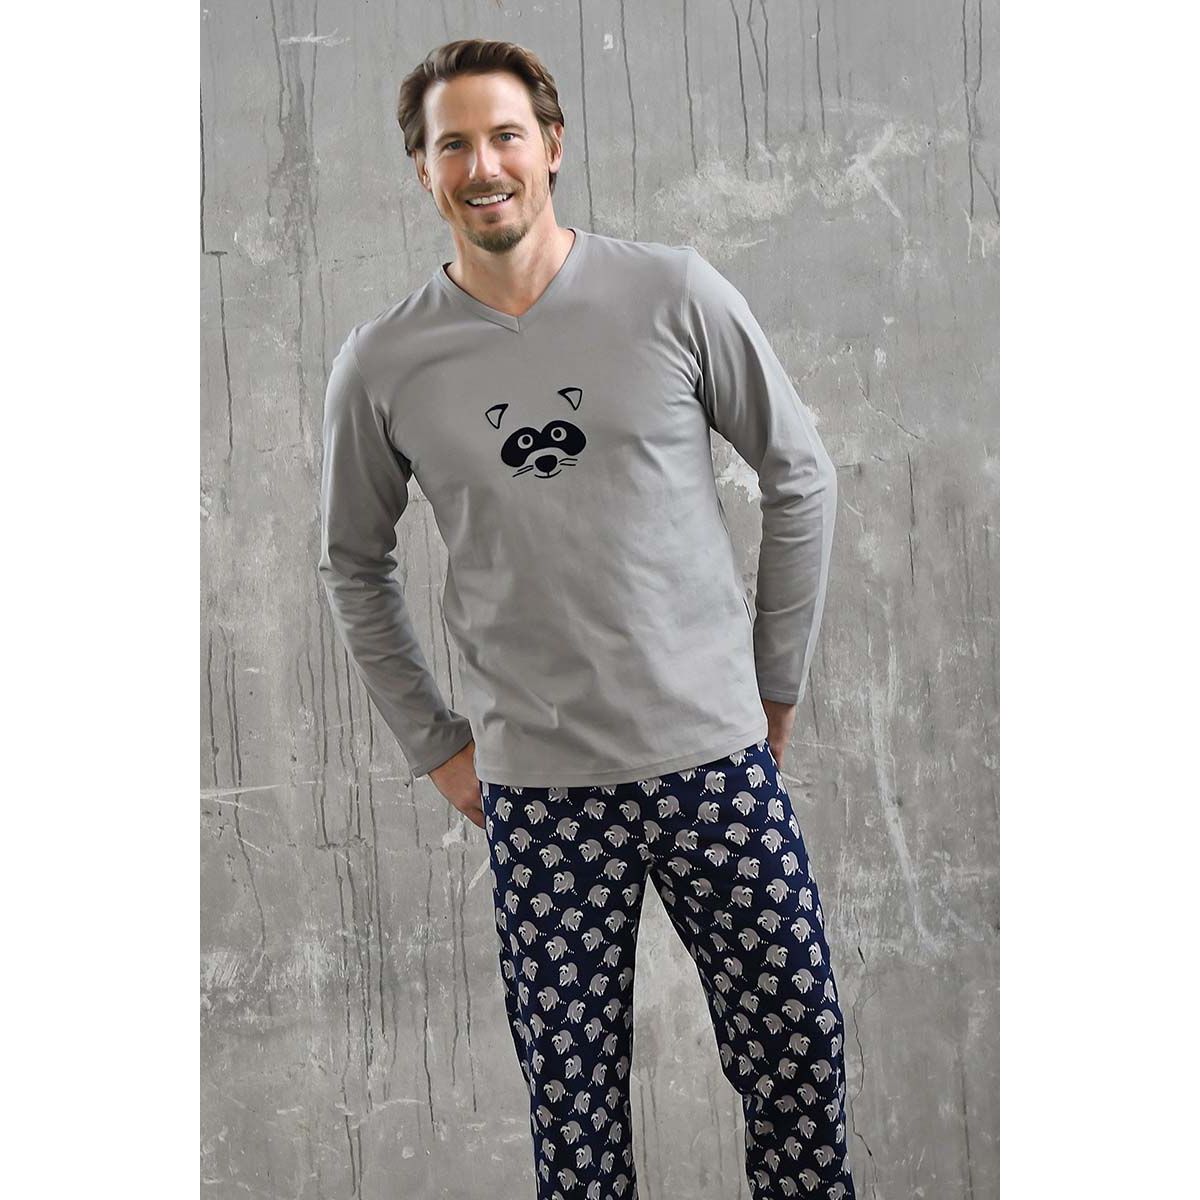 Blauwe heren pyjama wasbeer Gratis verzending | Online de mooiste pyjama's, nachthemden, ondermode en meer